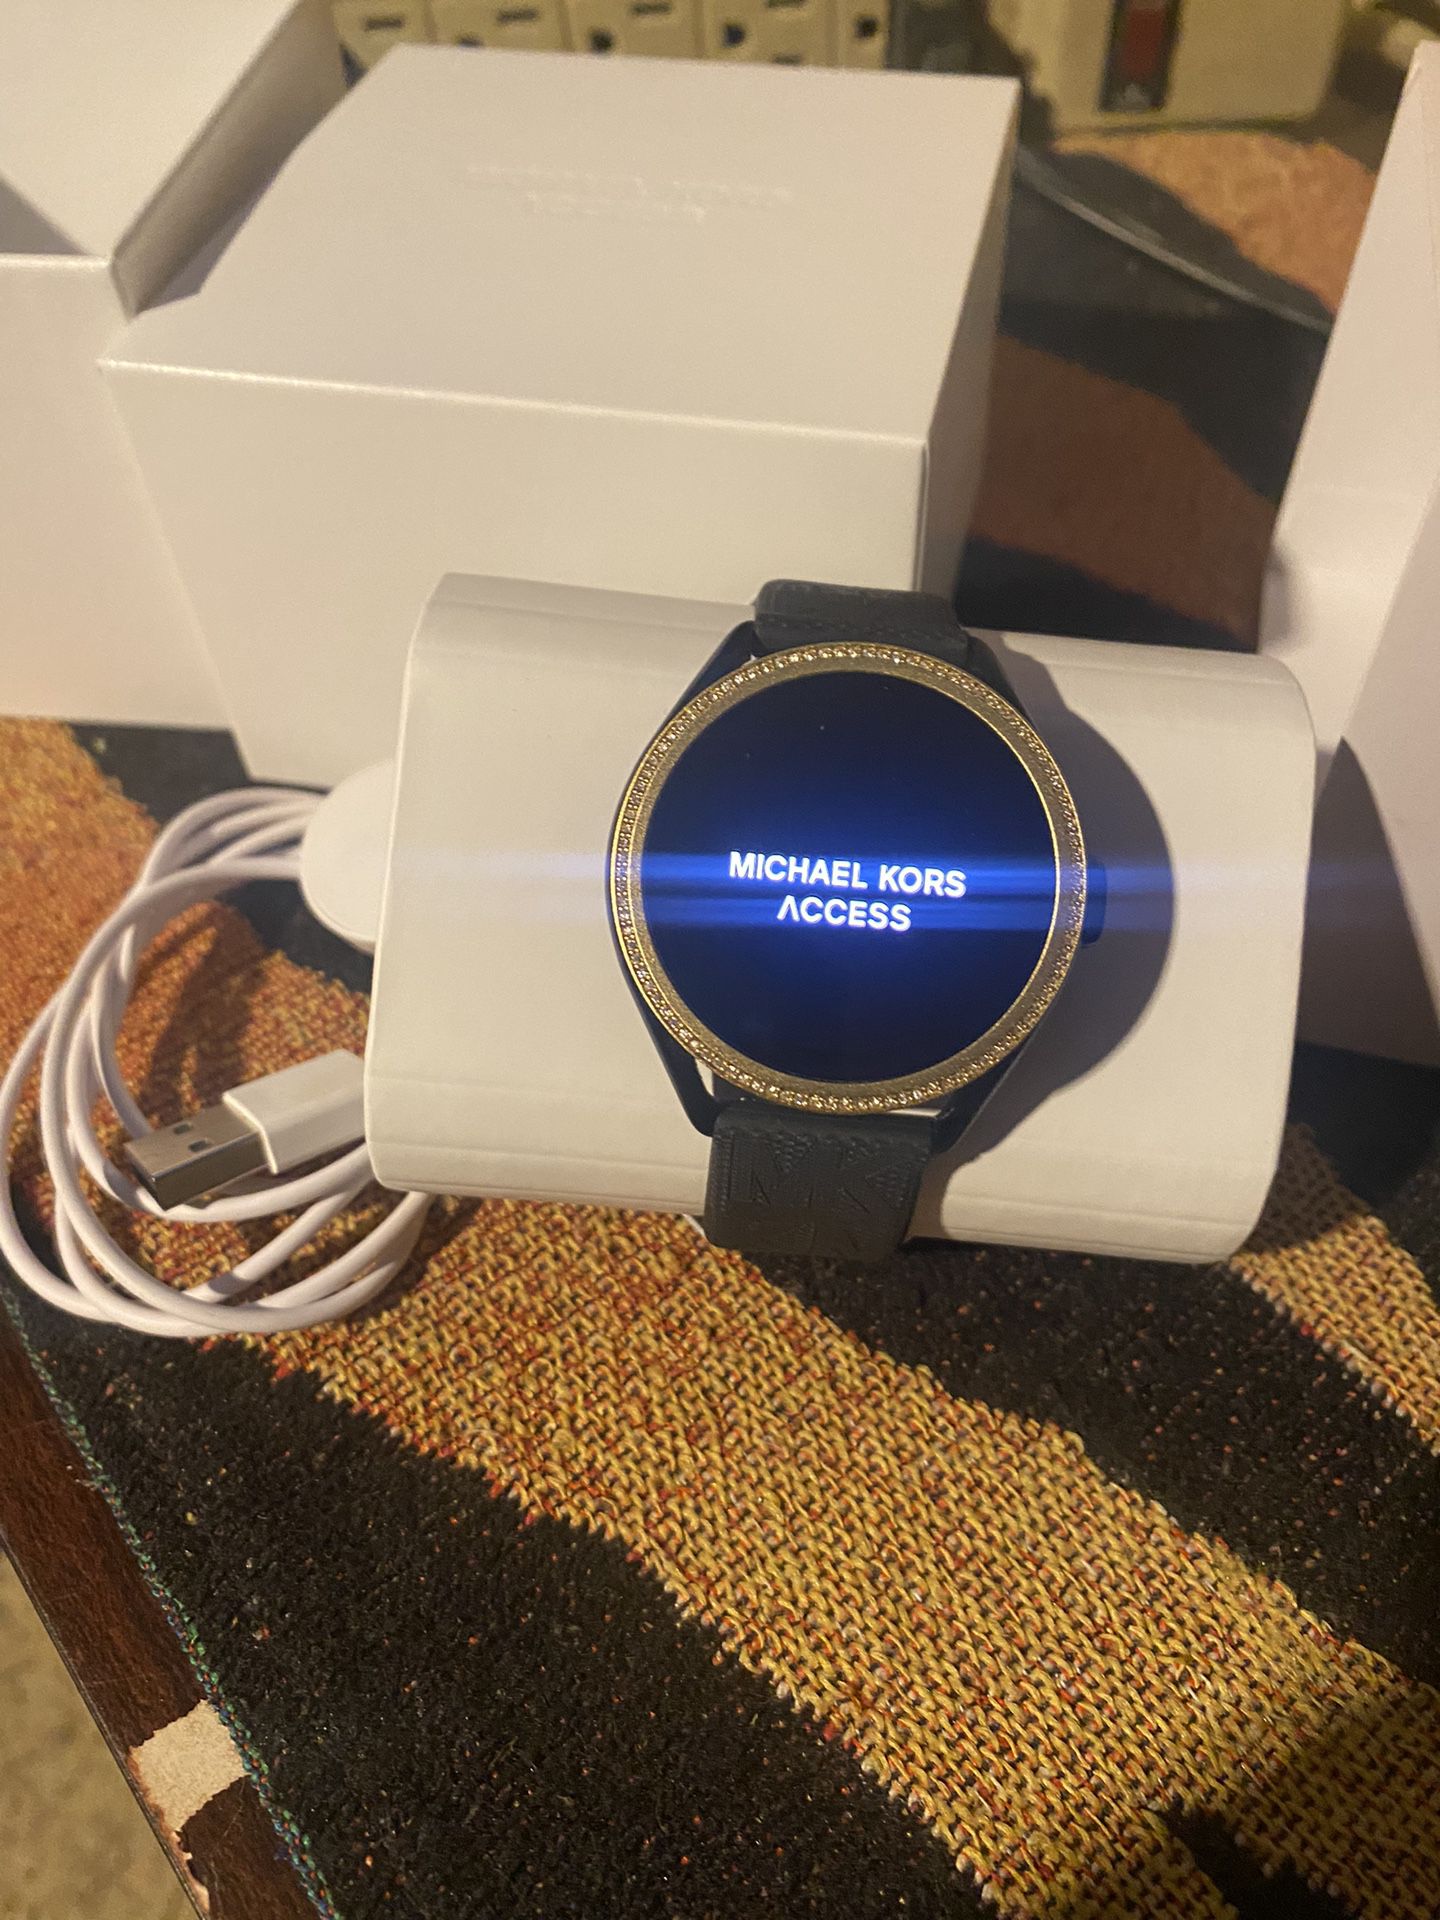 Michael Kors, Smart Watch for Sale in Laredo, TX - OfferUp